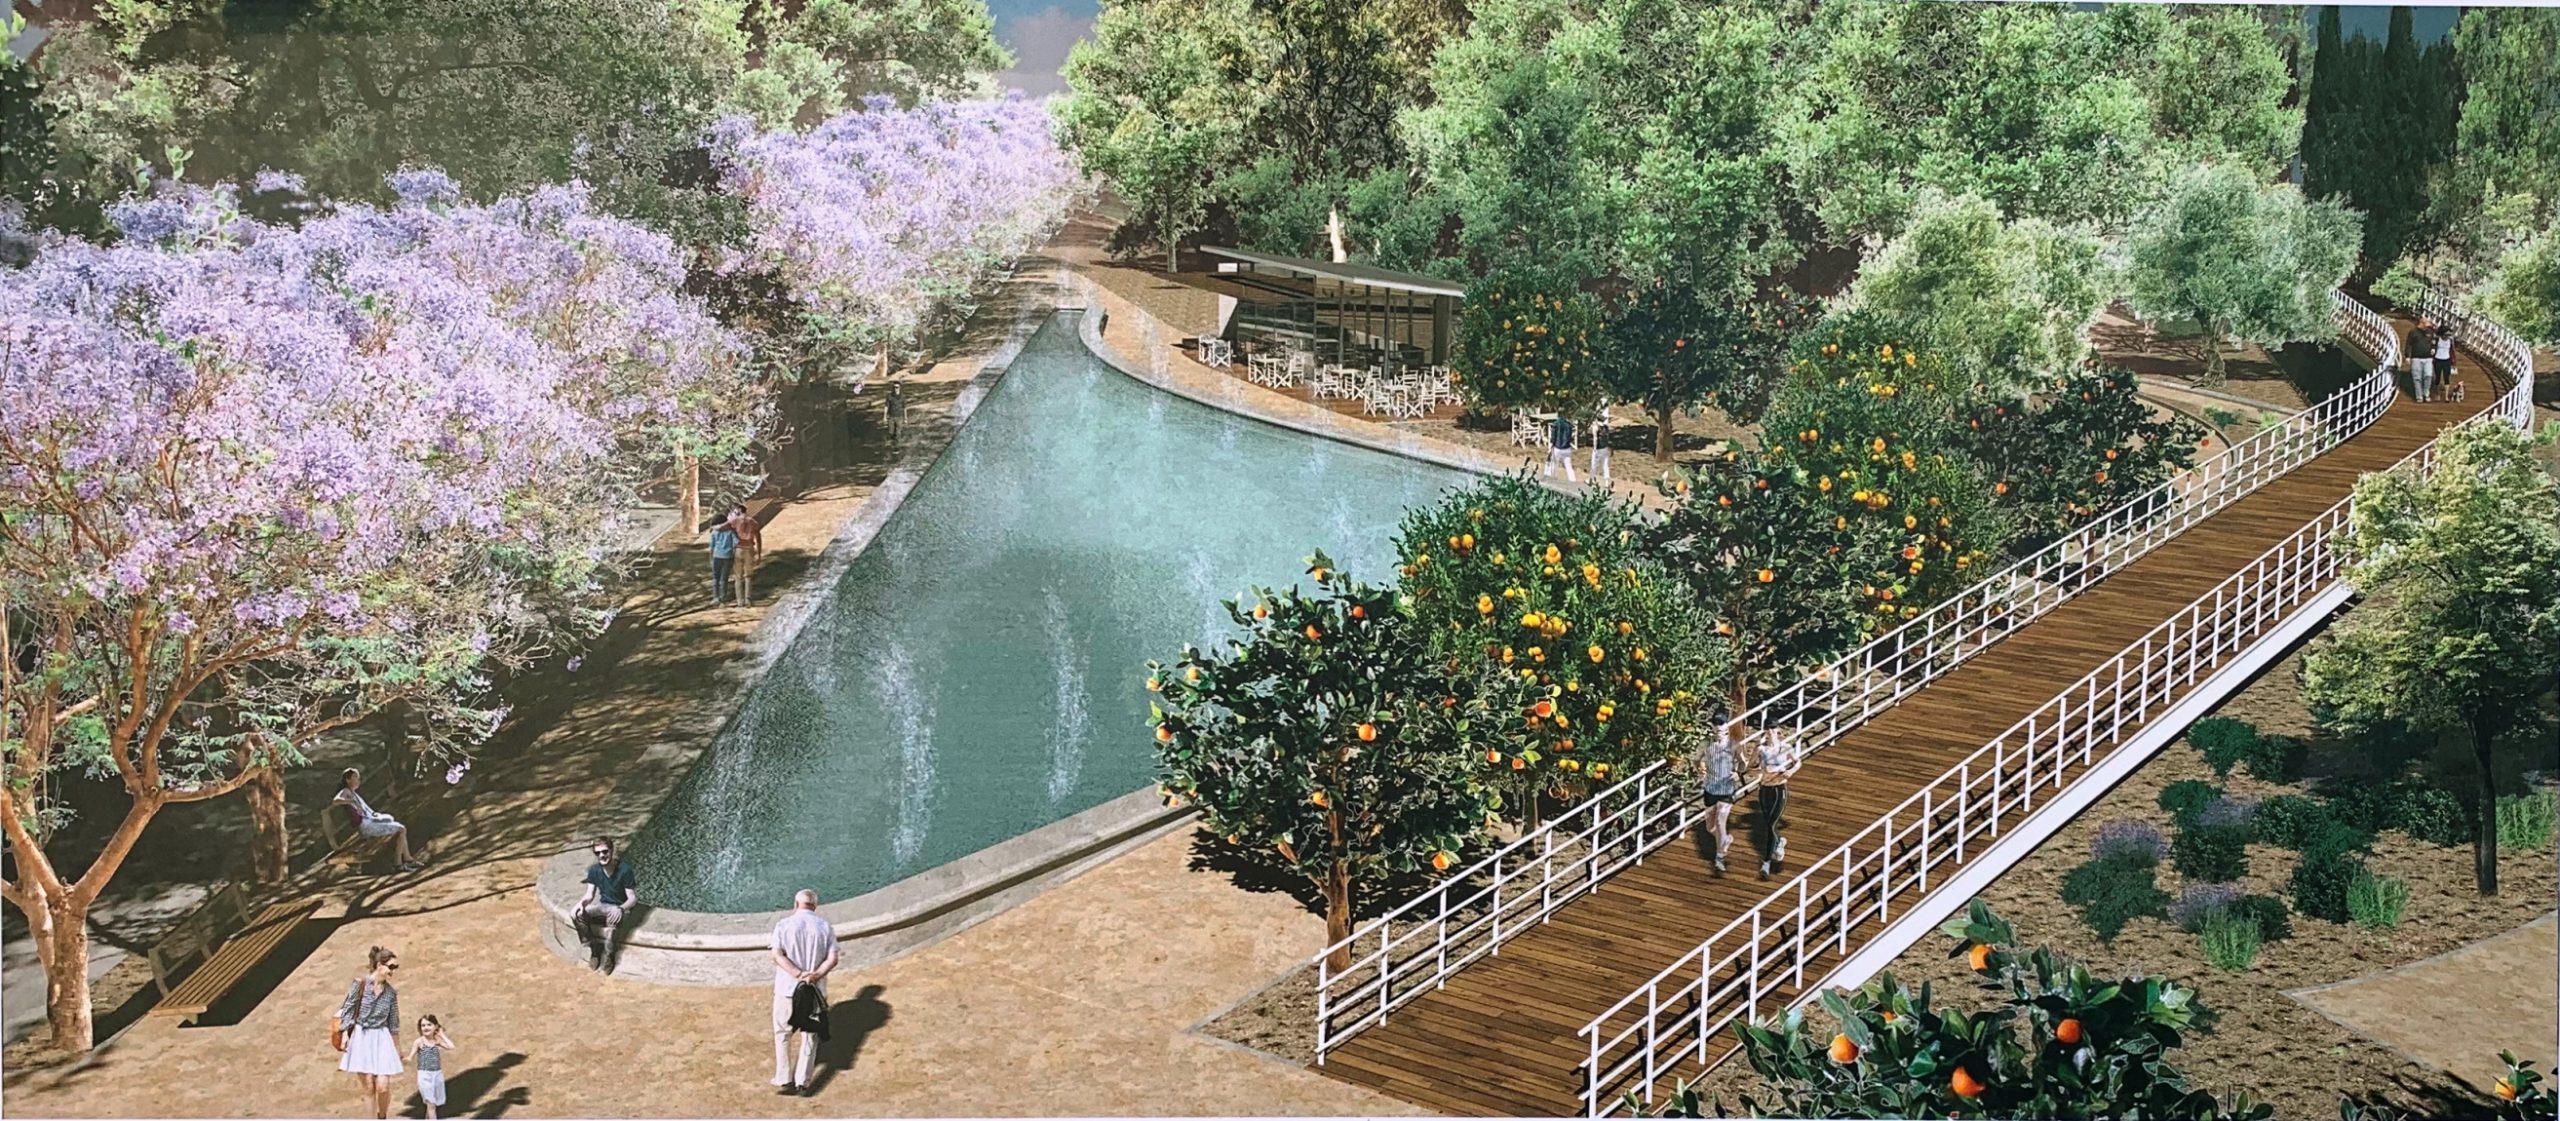 Τα τρία μεγάλα πάρκα που ξεκινούν εντός του 2023 στη Λάρνακα